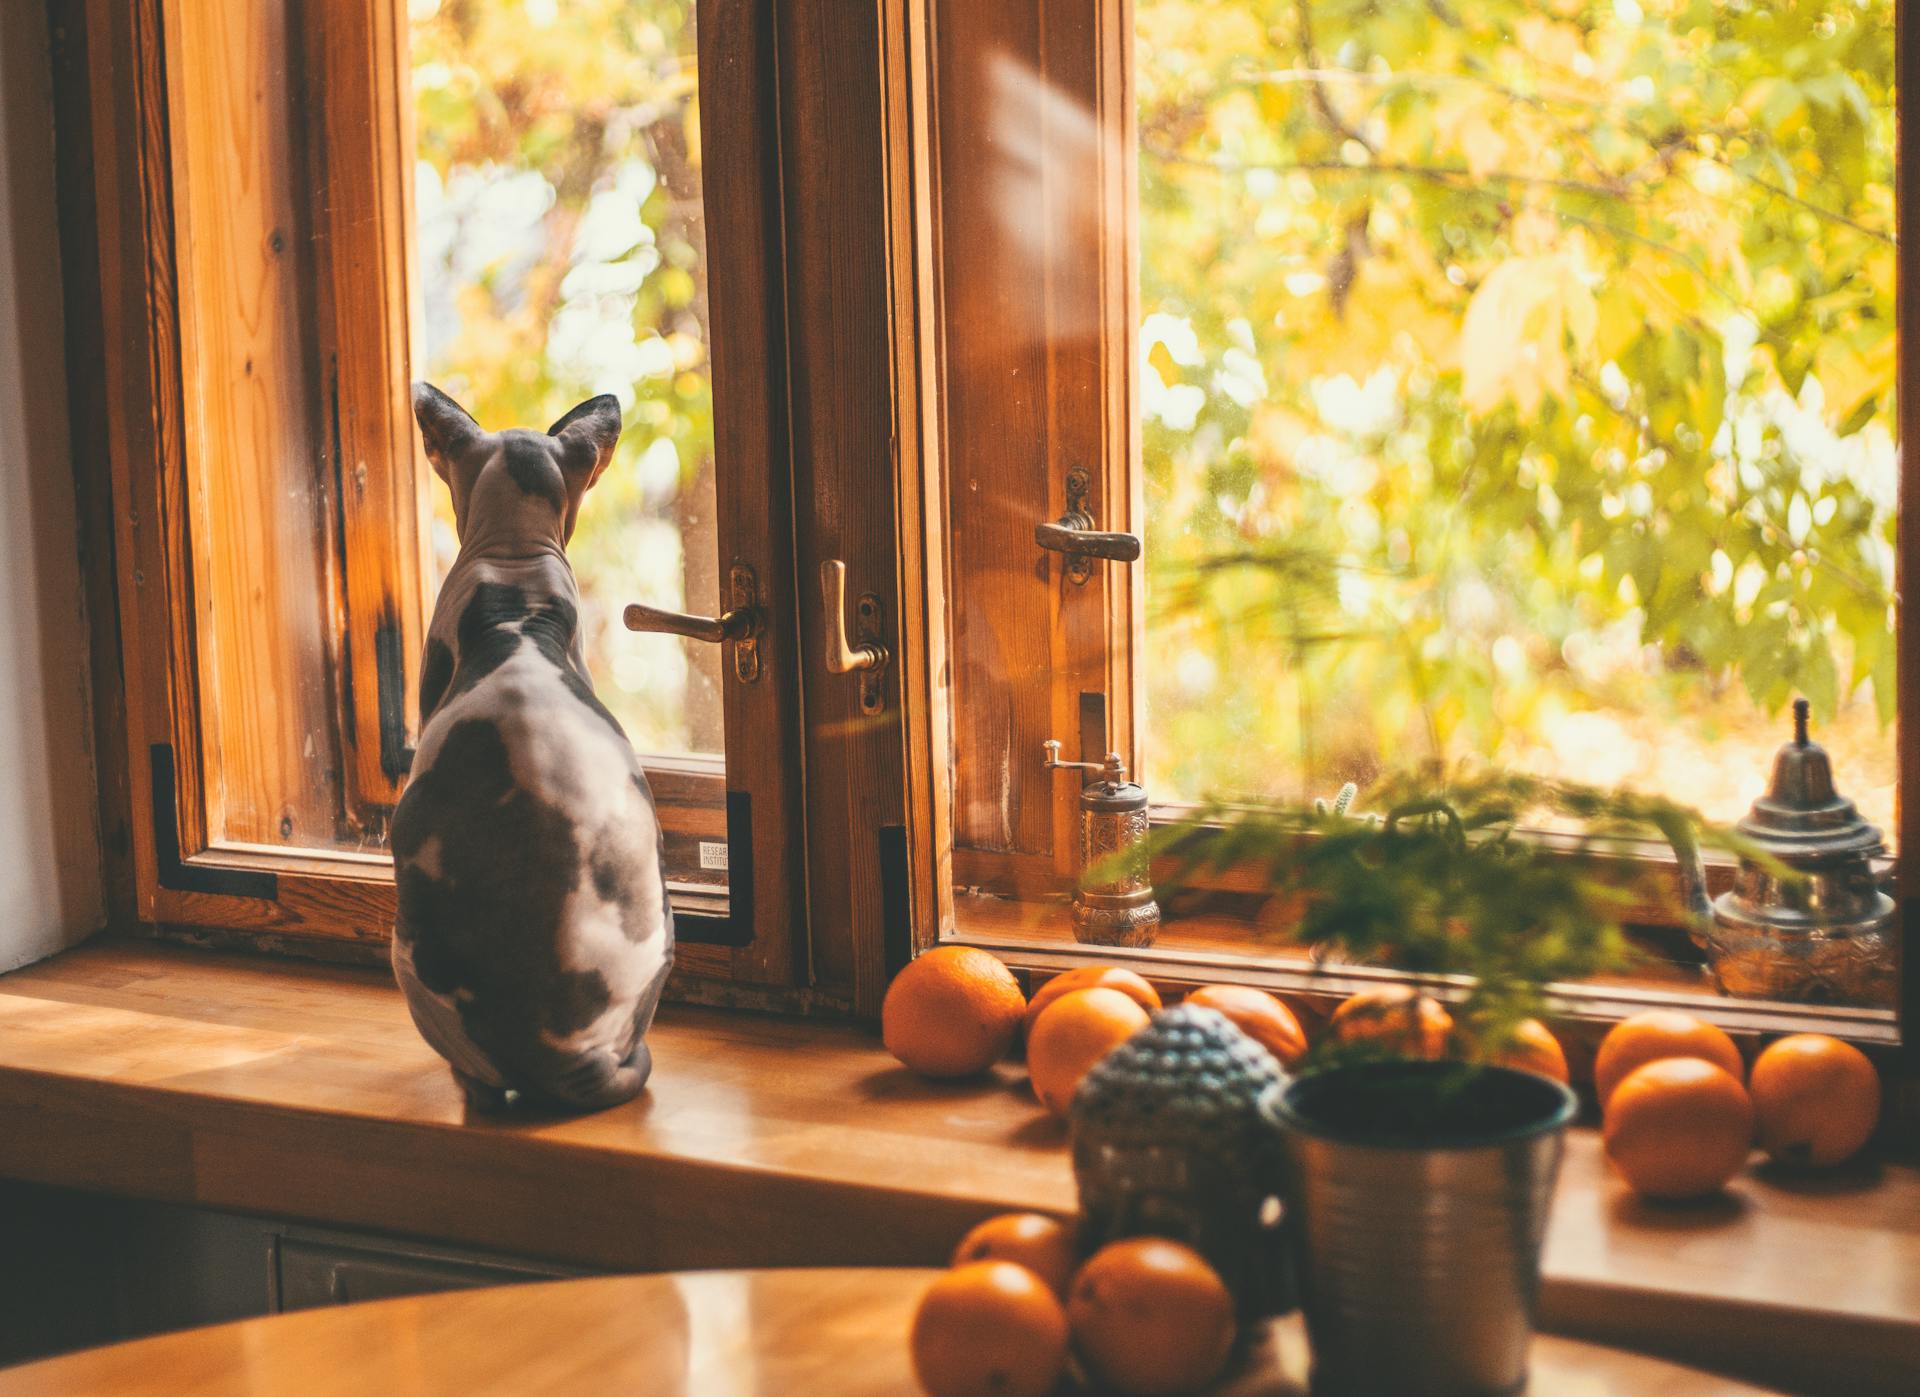 A cat sitting by an open window